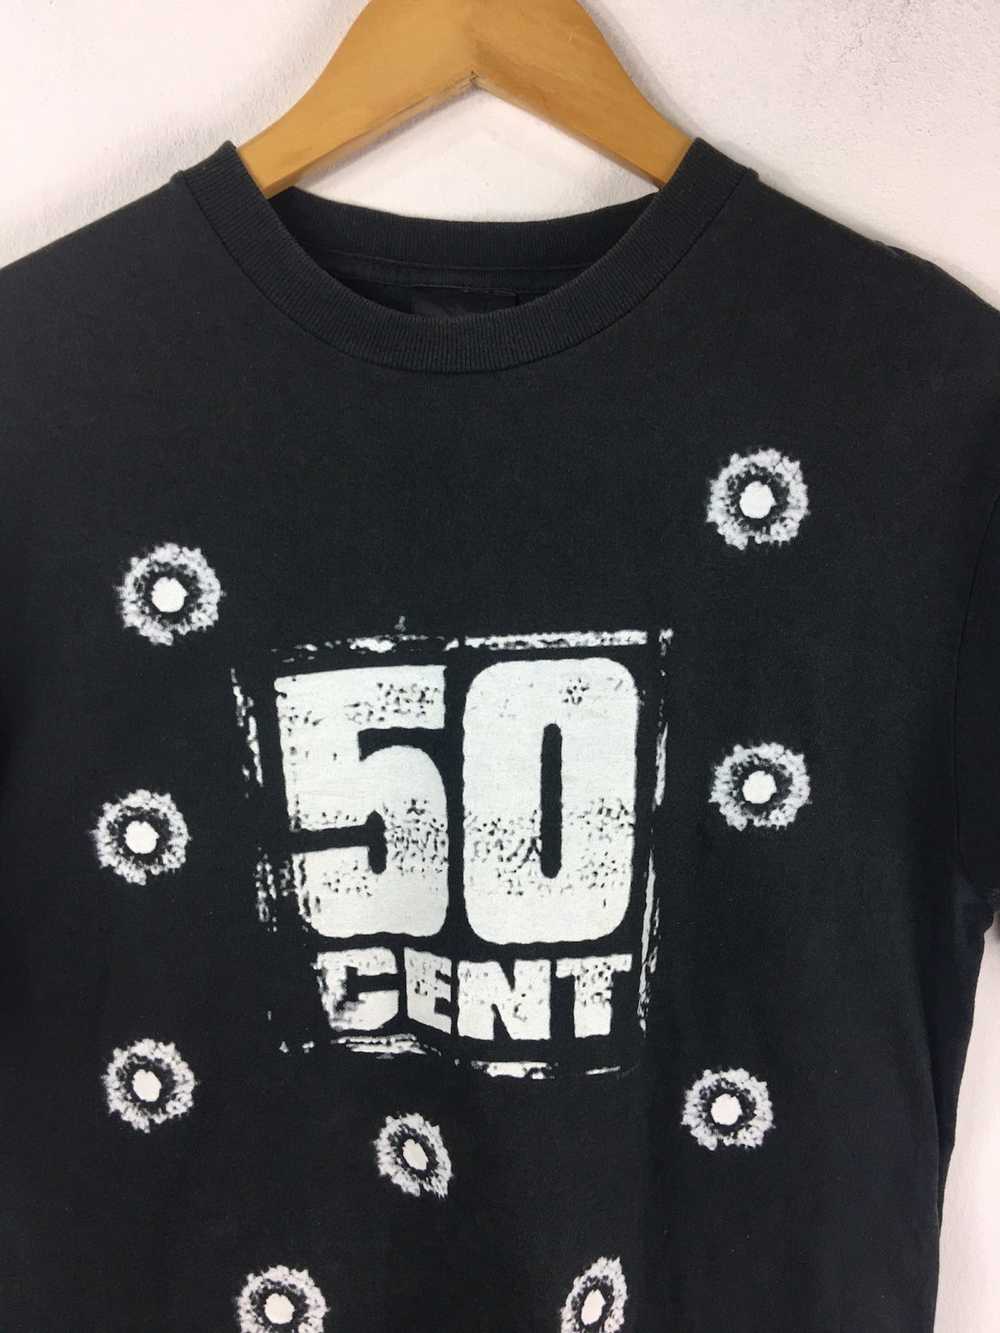 Band Tees × Rap Tees 50 Cent Rap tee Band Shirt - image 3